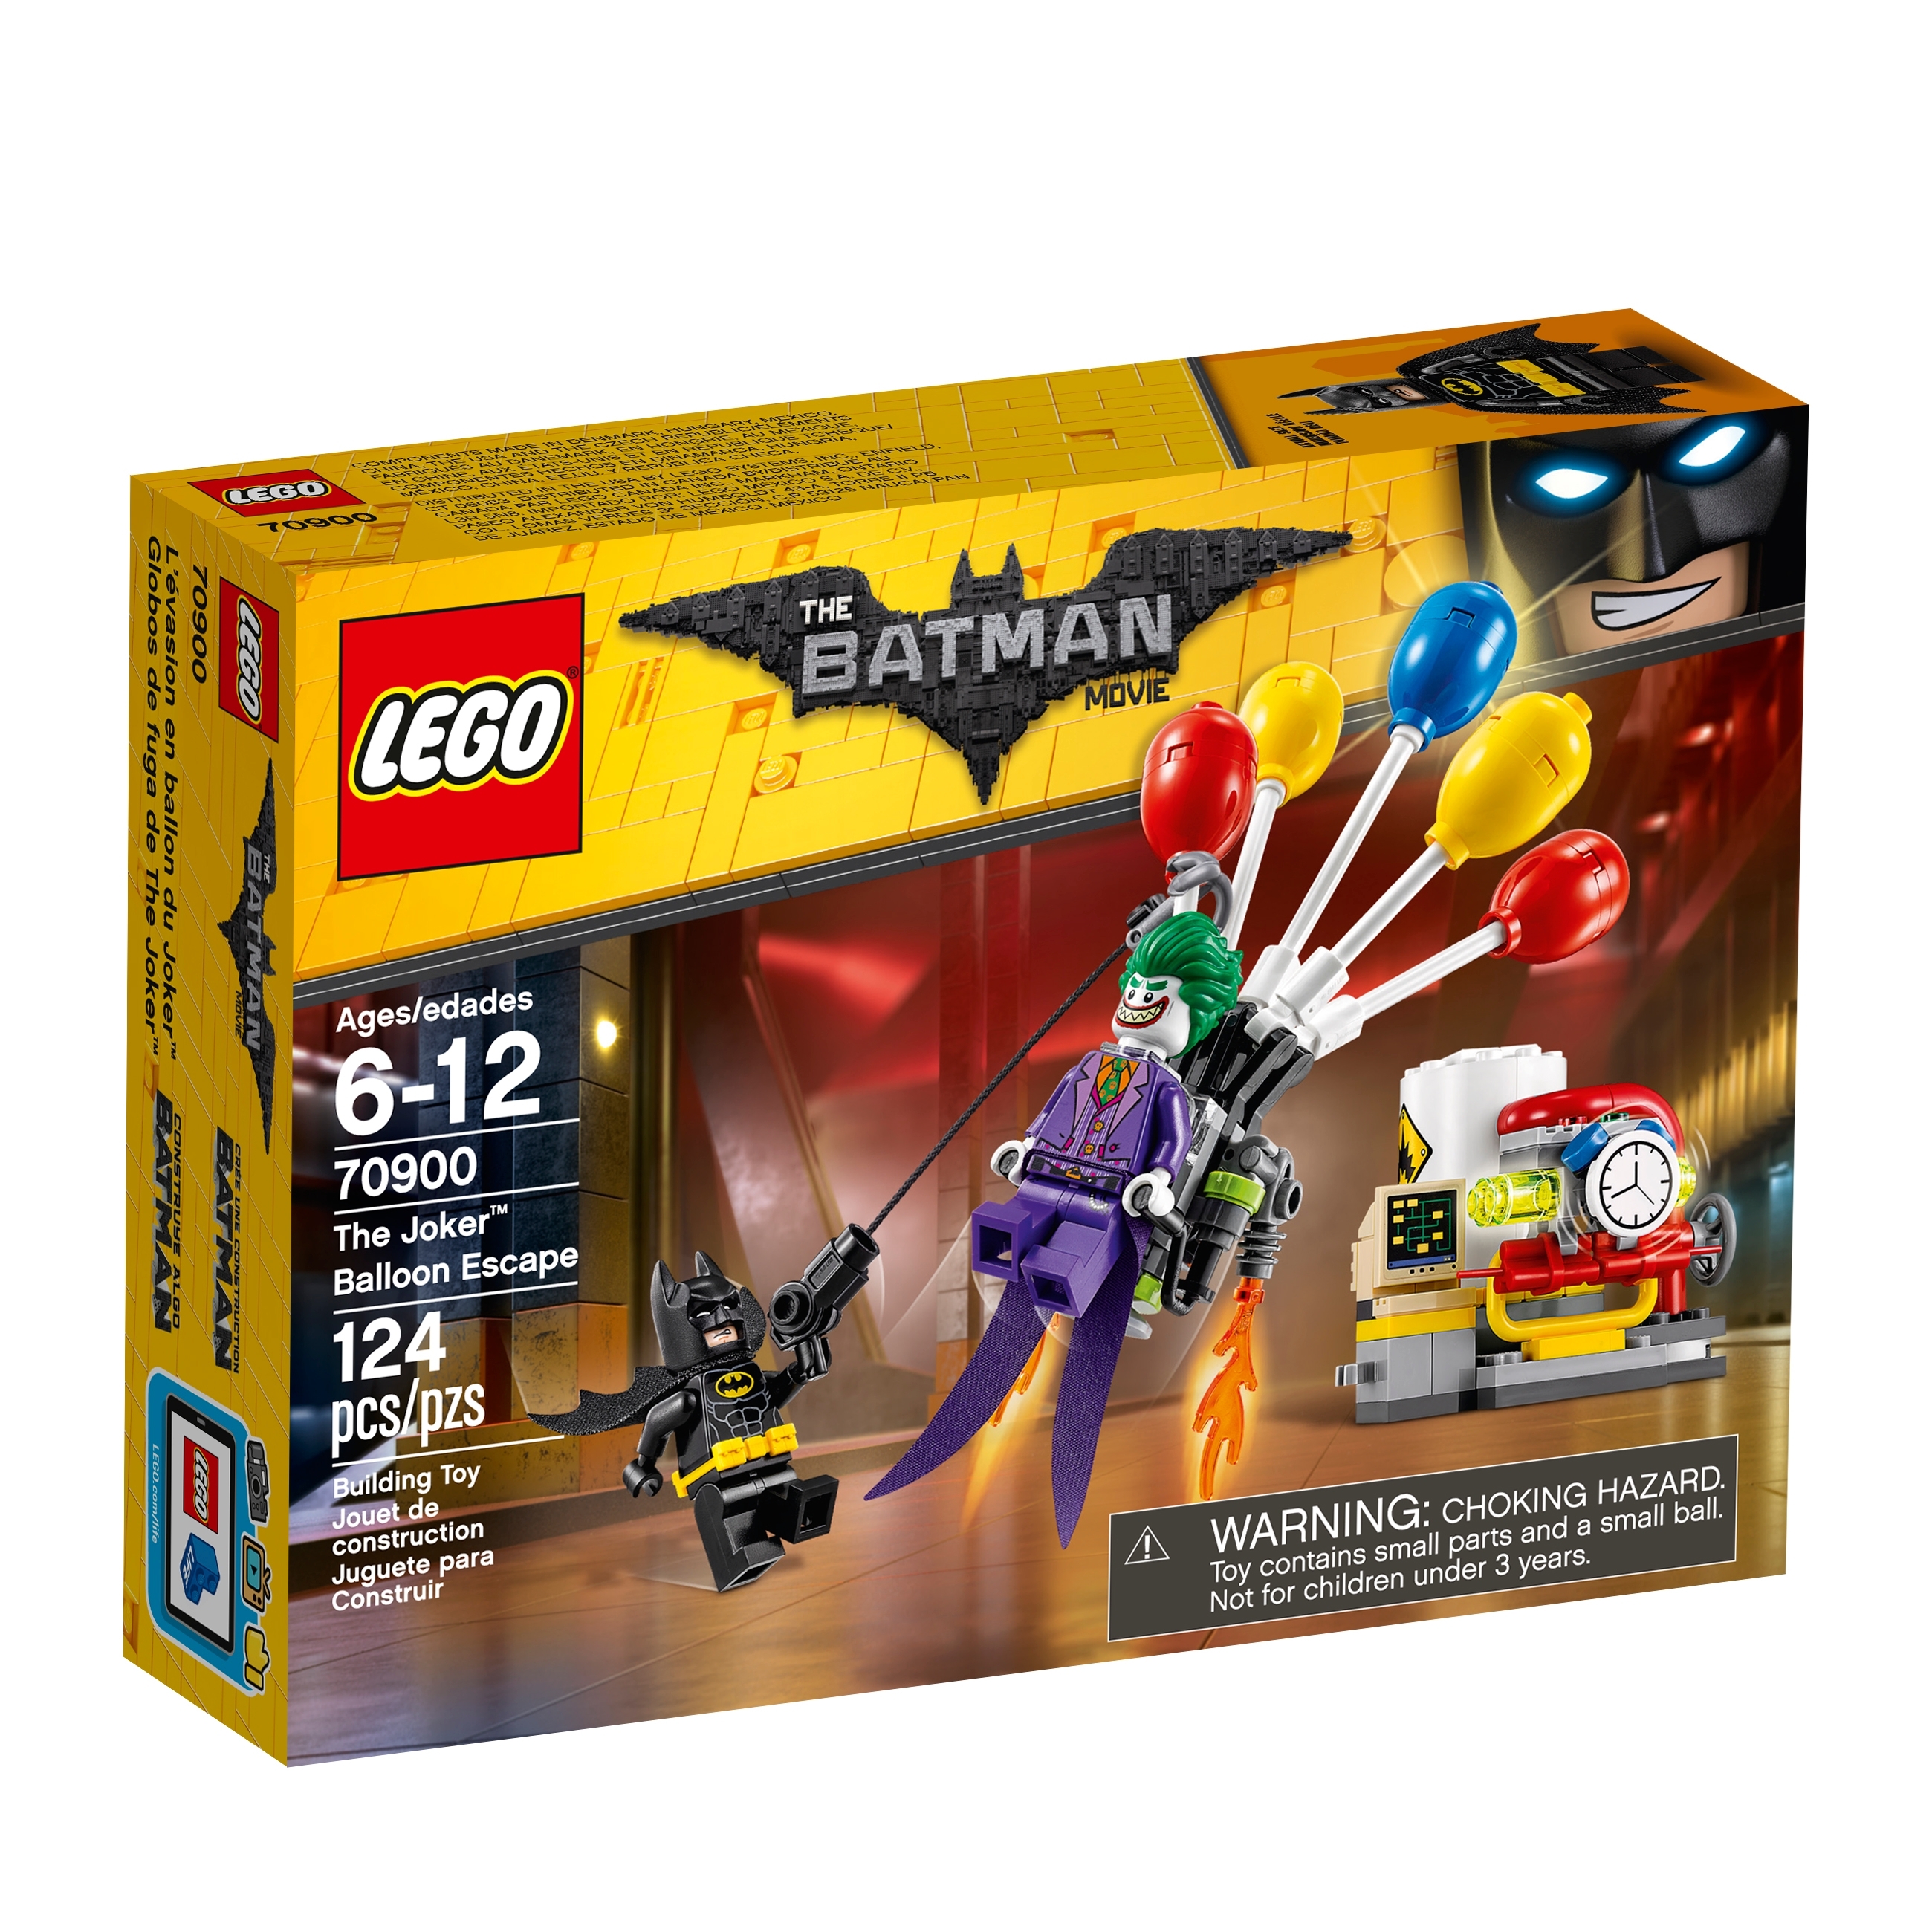 Caroline Heerlijk Beide The Joker™ ballonvlucht 70900 | THE LEGO® BATMAN MOVIE | Officiële LEGO®  winkel NL